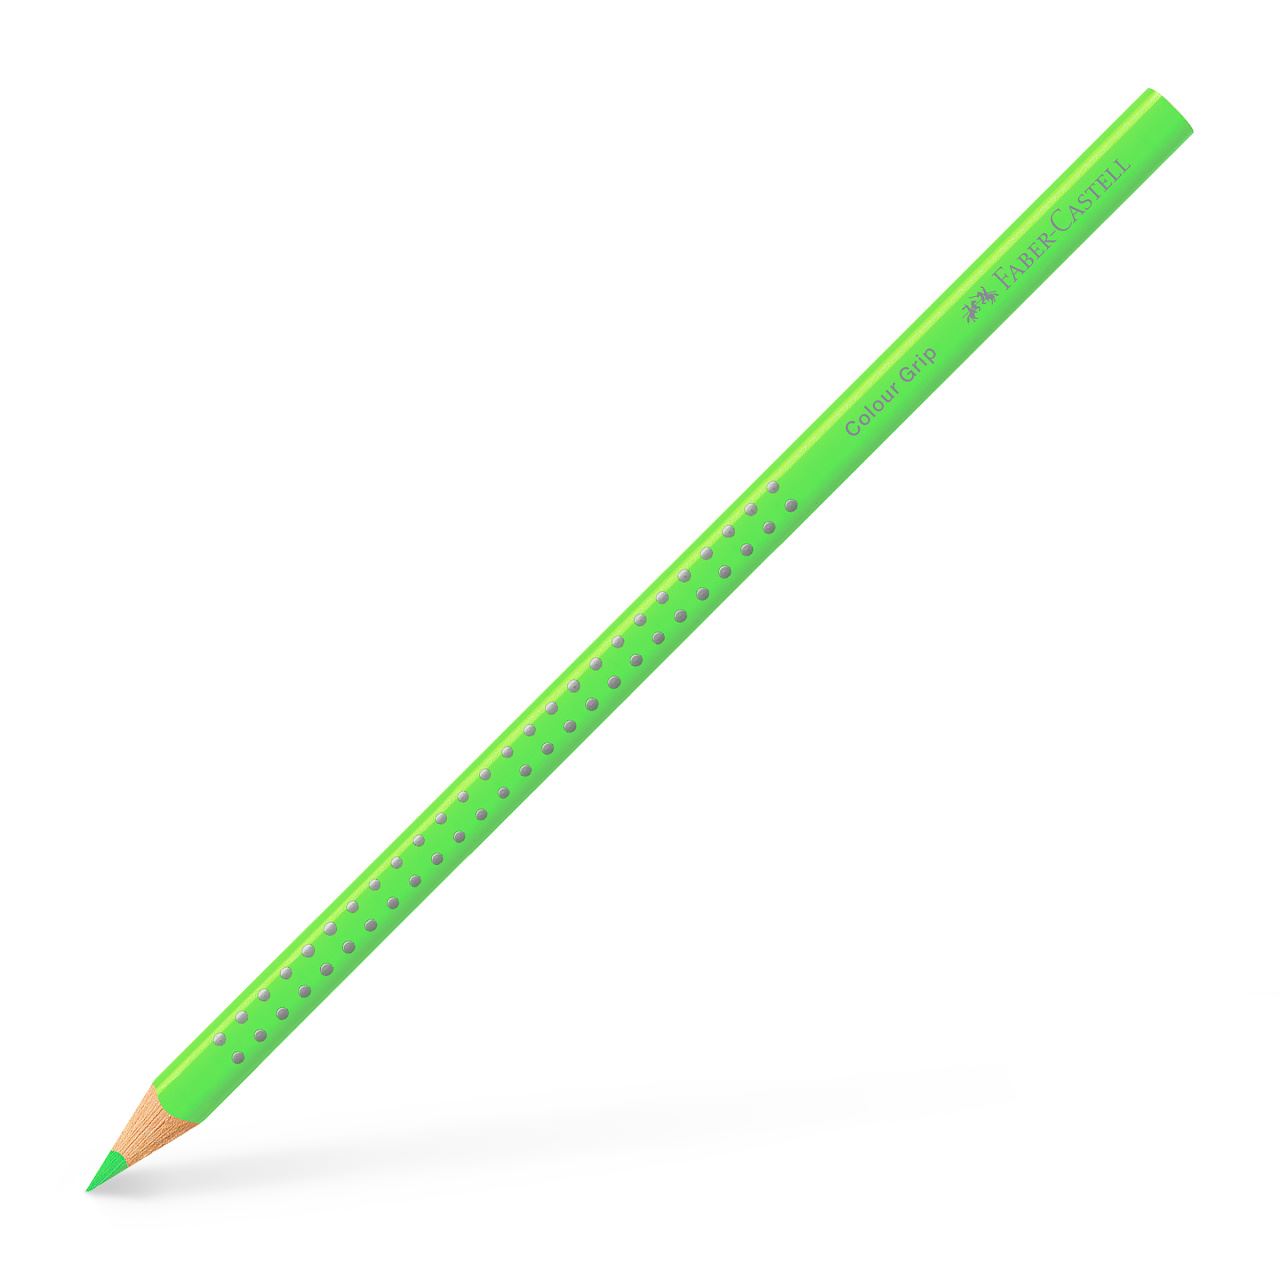 Faber-Castell - Crayon de couleur Colour Grip vert fluo